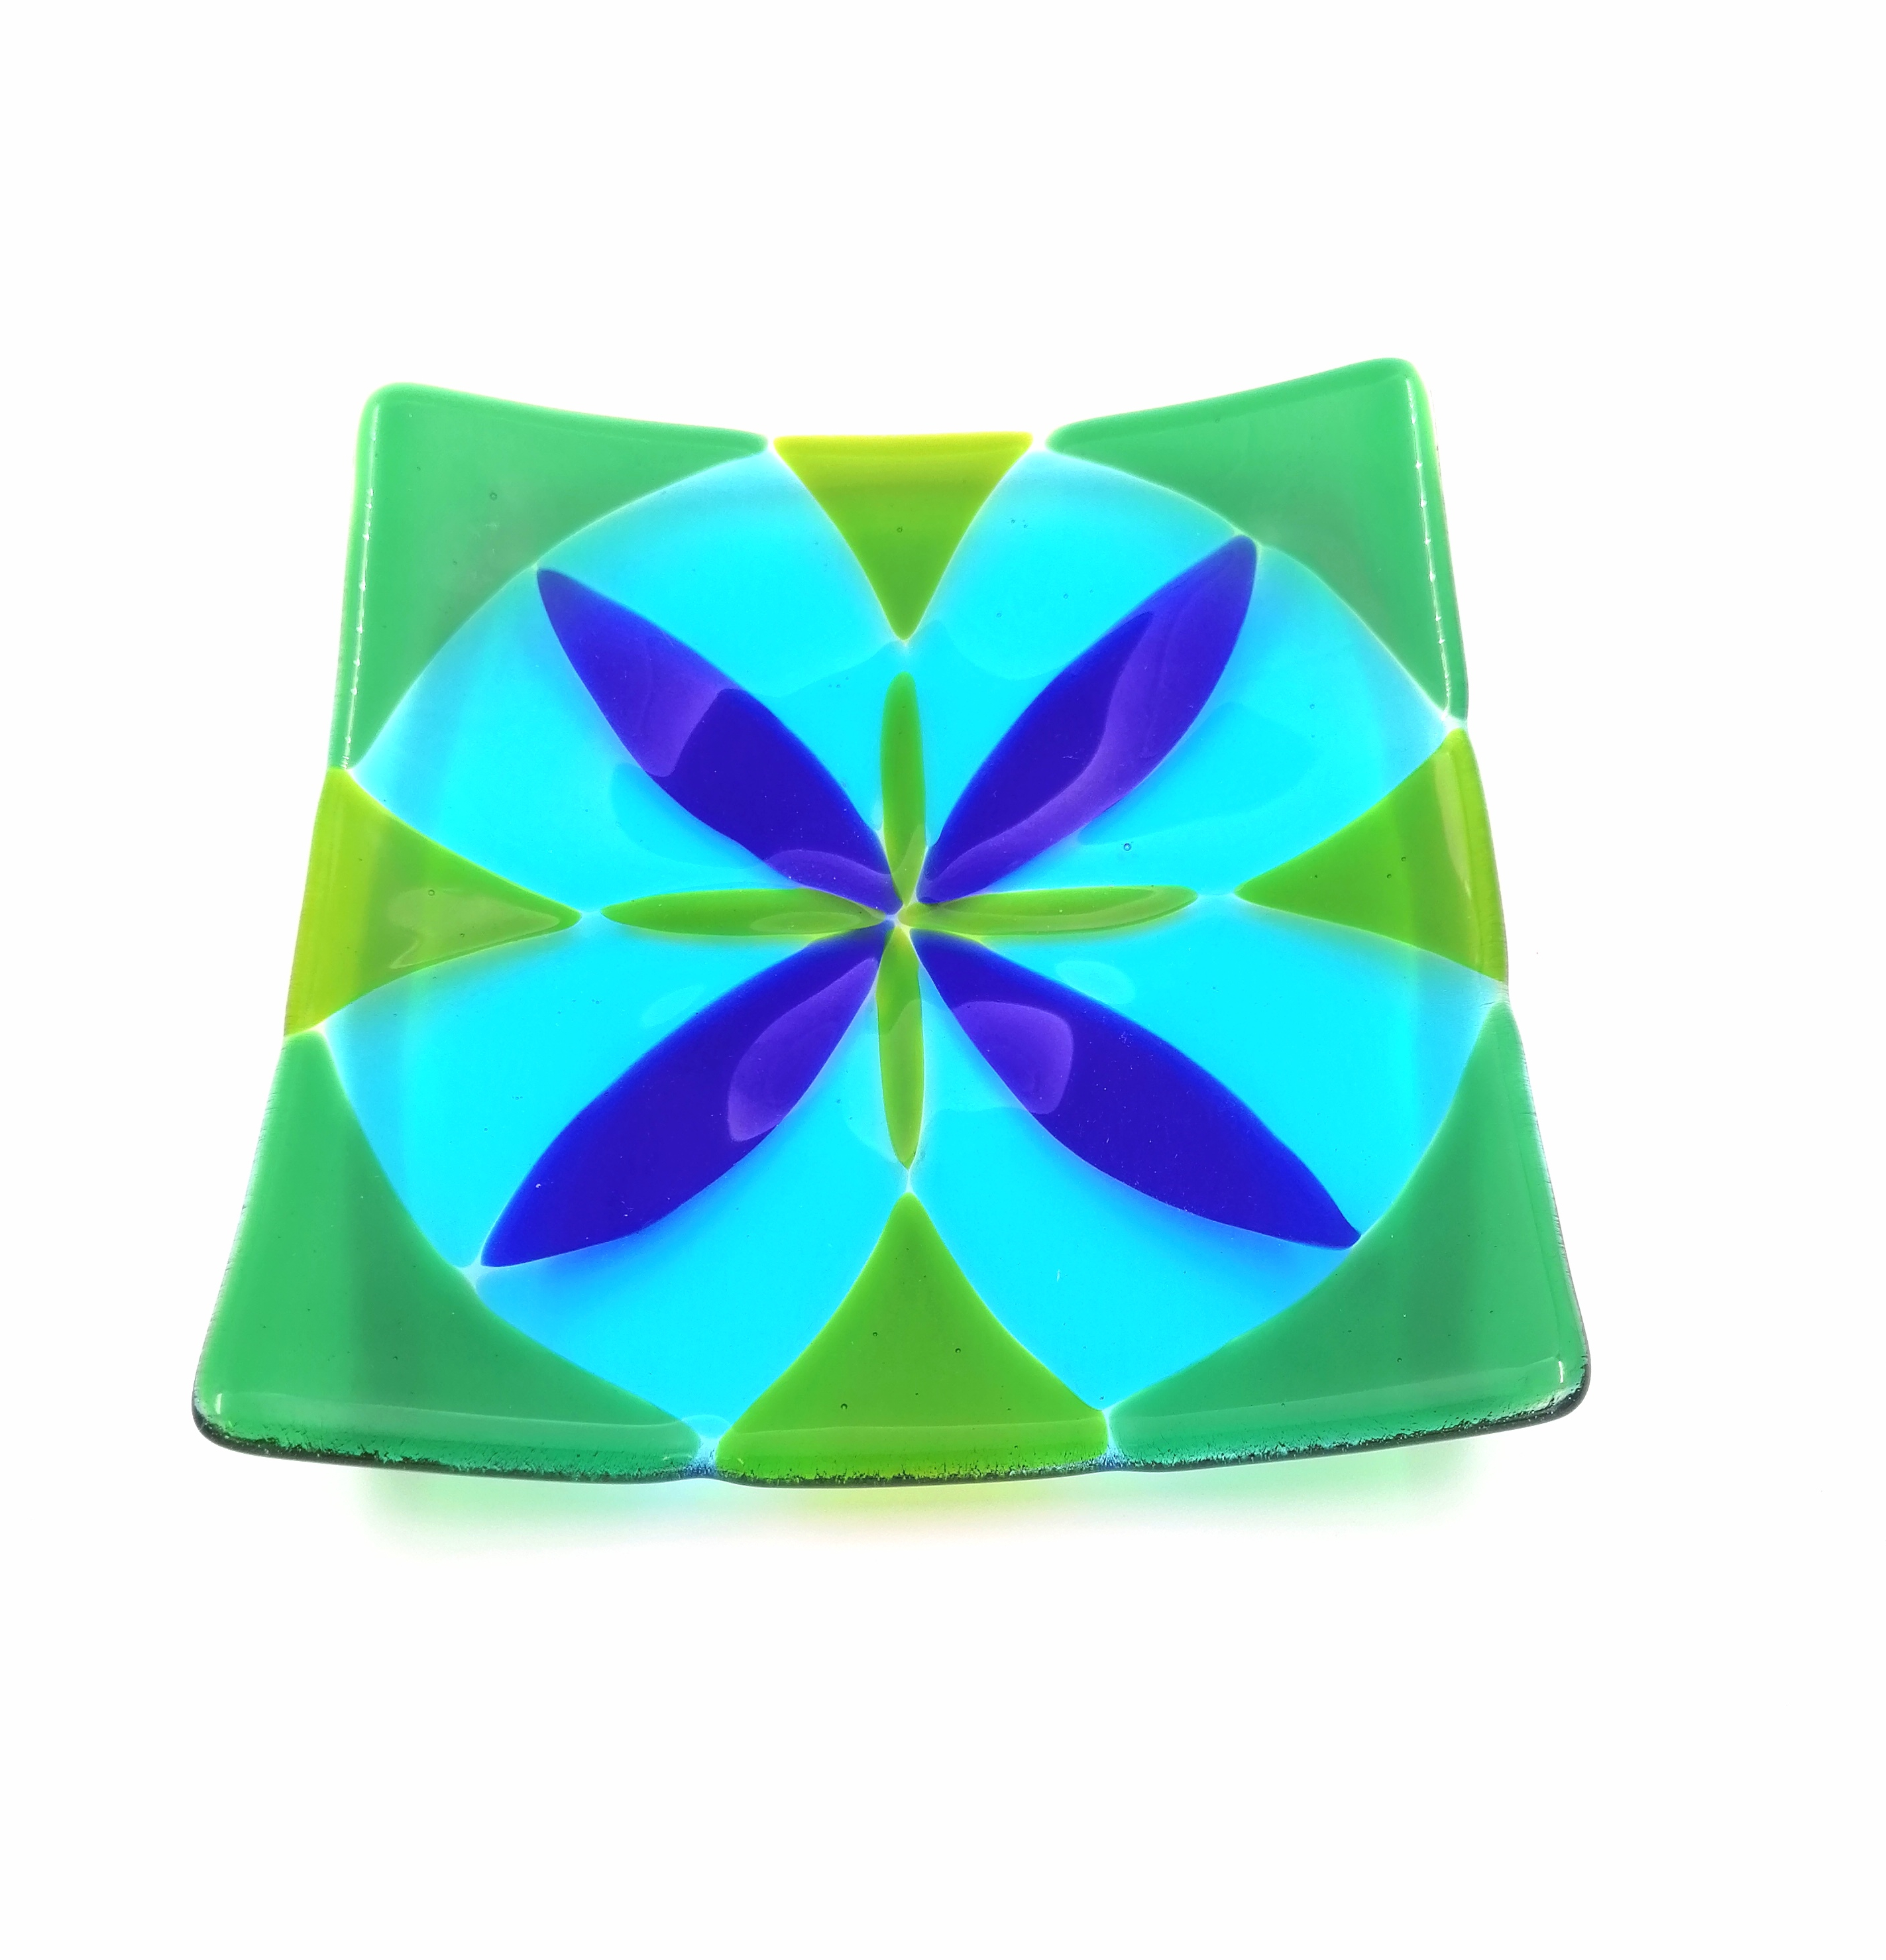 Vierkant schaaltje blauw groen